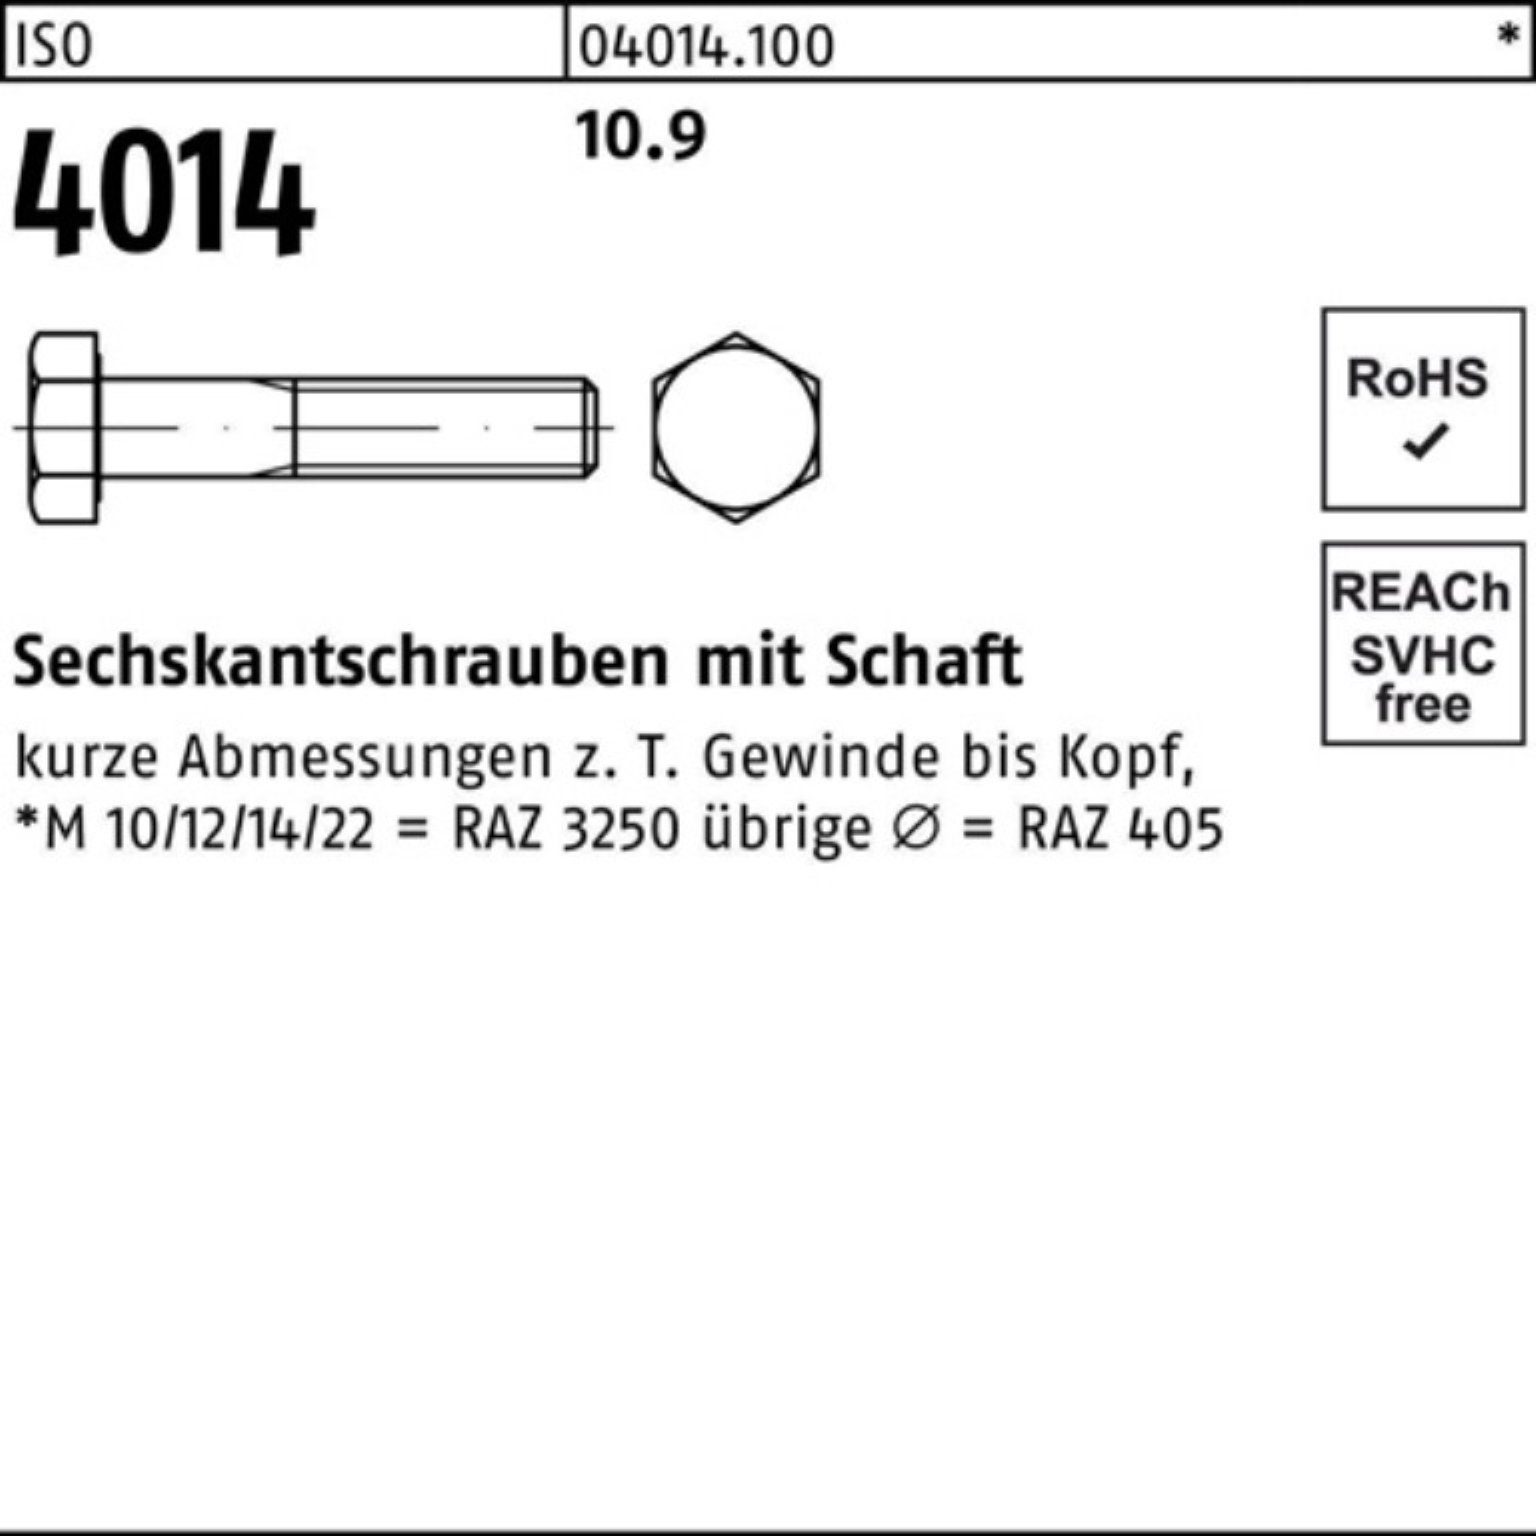 Bufab Sechskantschraube 100er Pack 120 I ISO Stück Sechskantschraube M18x 4014 10.9 Schaft 25